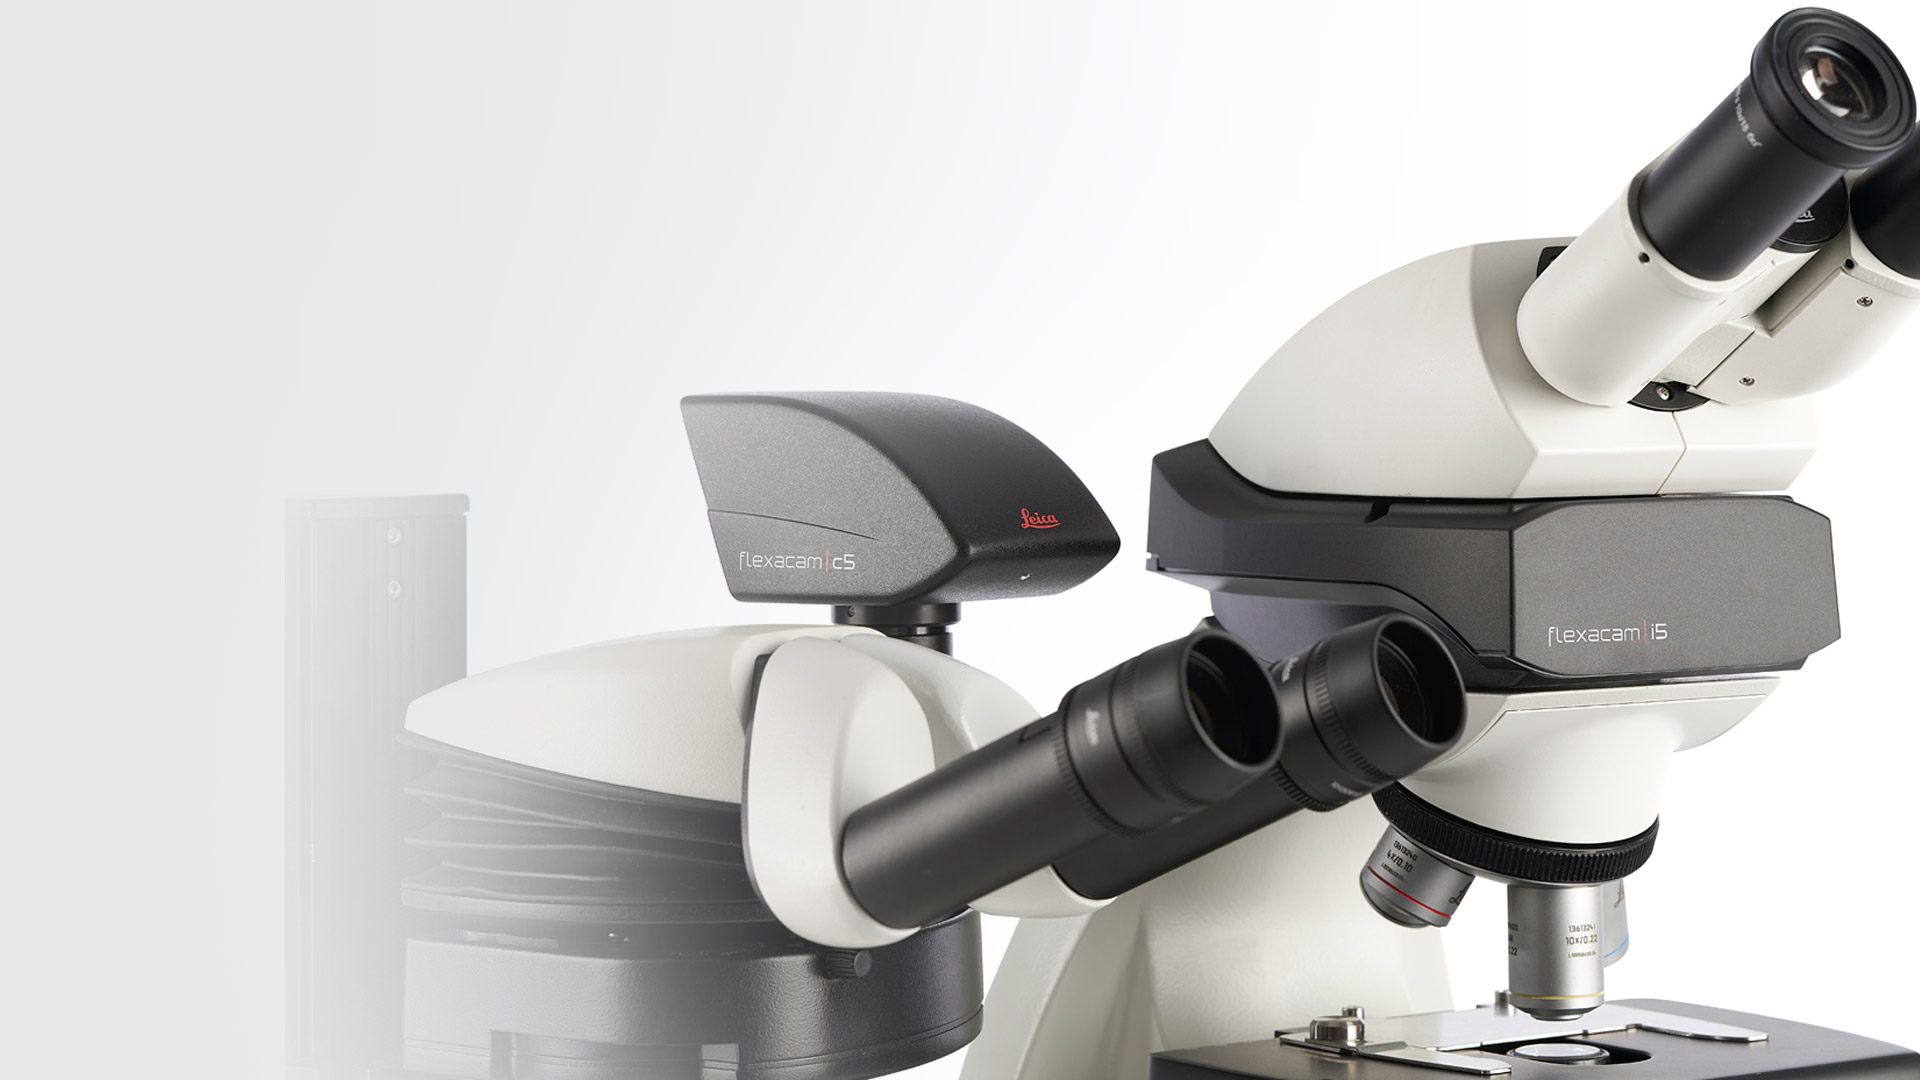 Flexacam c5 and i5 microscope cameras